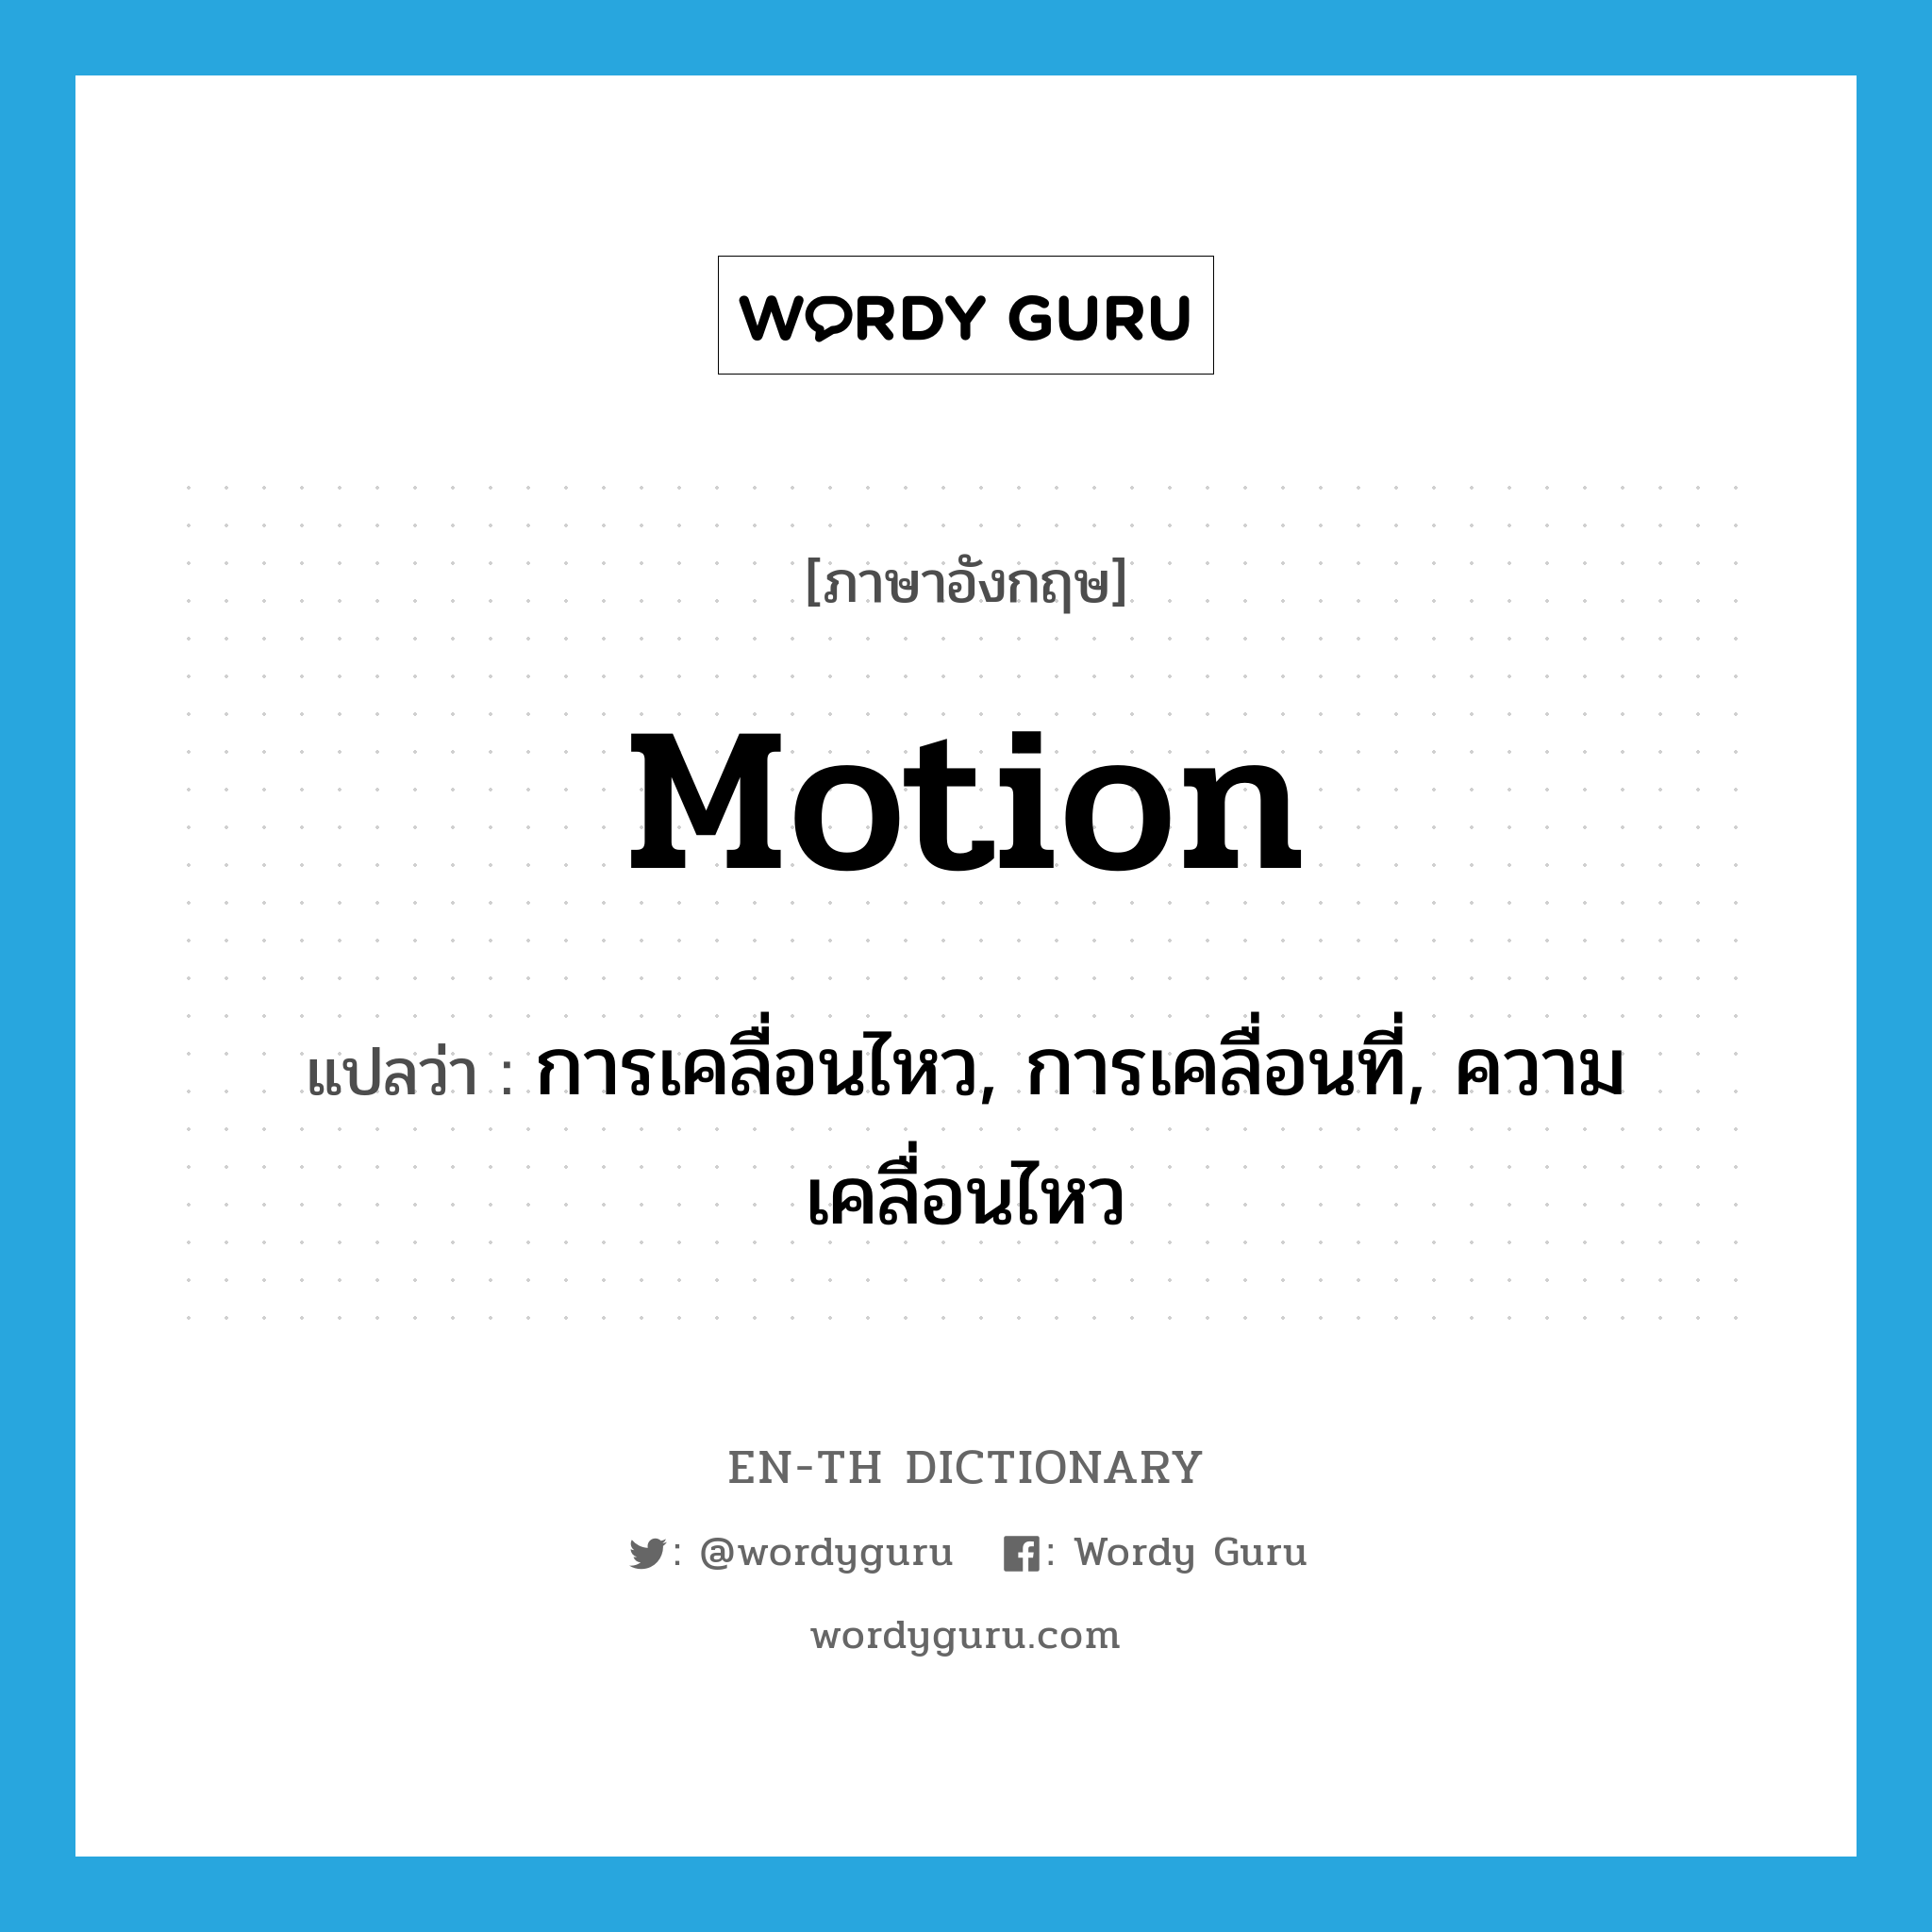 การเคลื่อนไหว, การเคลื่อนที่, ความเคลื่อนไหว ภาษาอังกฤษ?, คำศัพท์ภาษาอังกฤษ การเคลื่อนไหว, การเคลื่อนที่, ความเคลื่อนไหว แปลว่า motion ประเภท N หมวด N